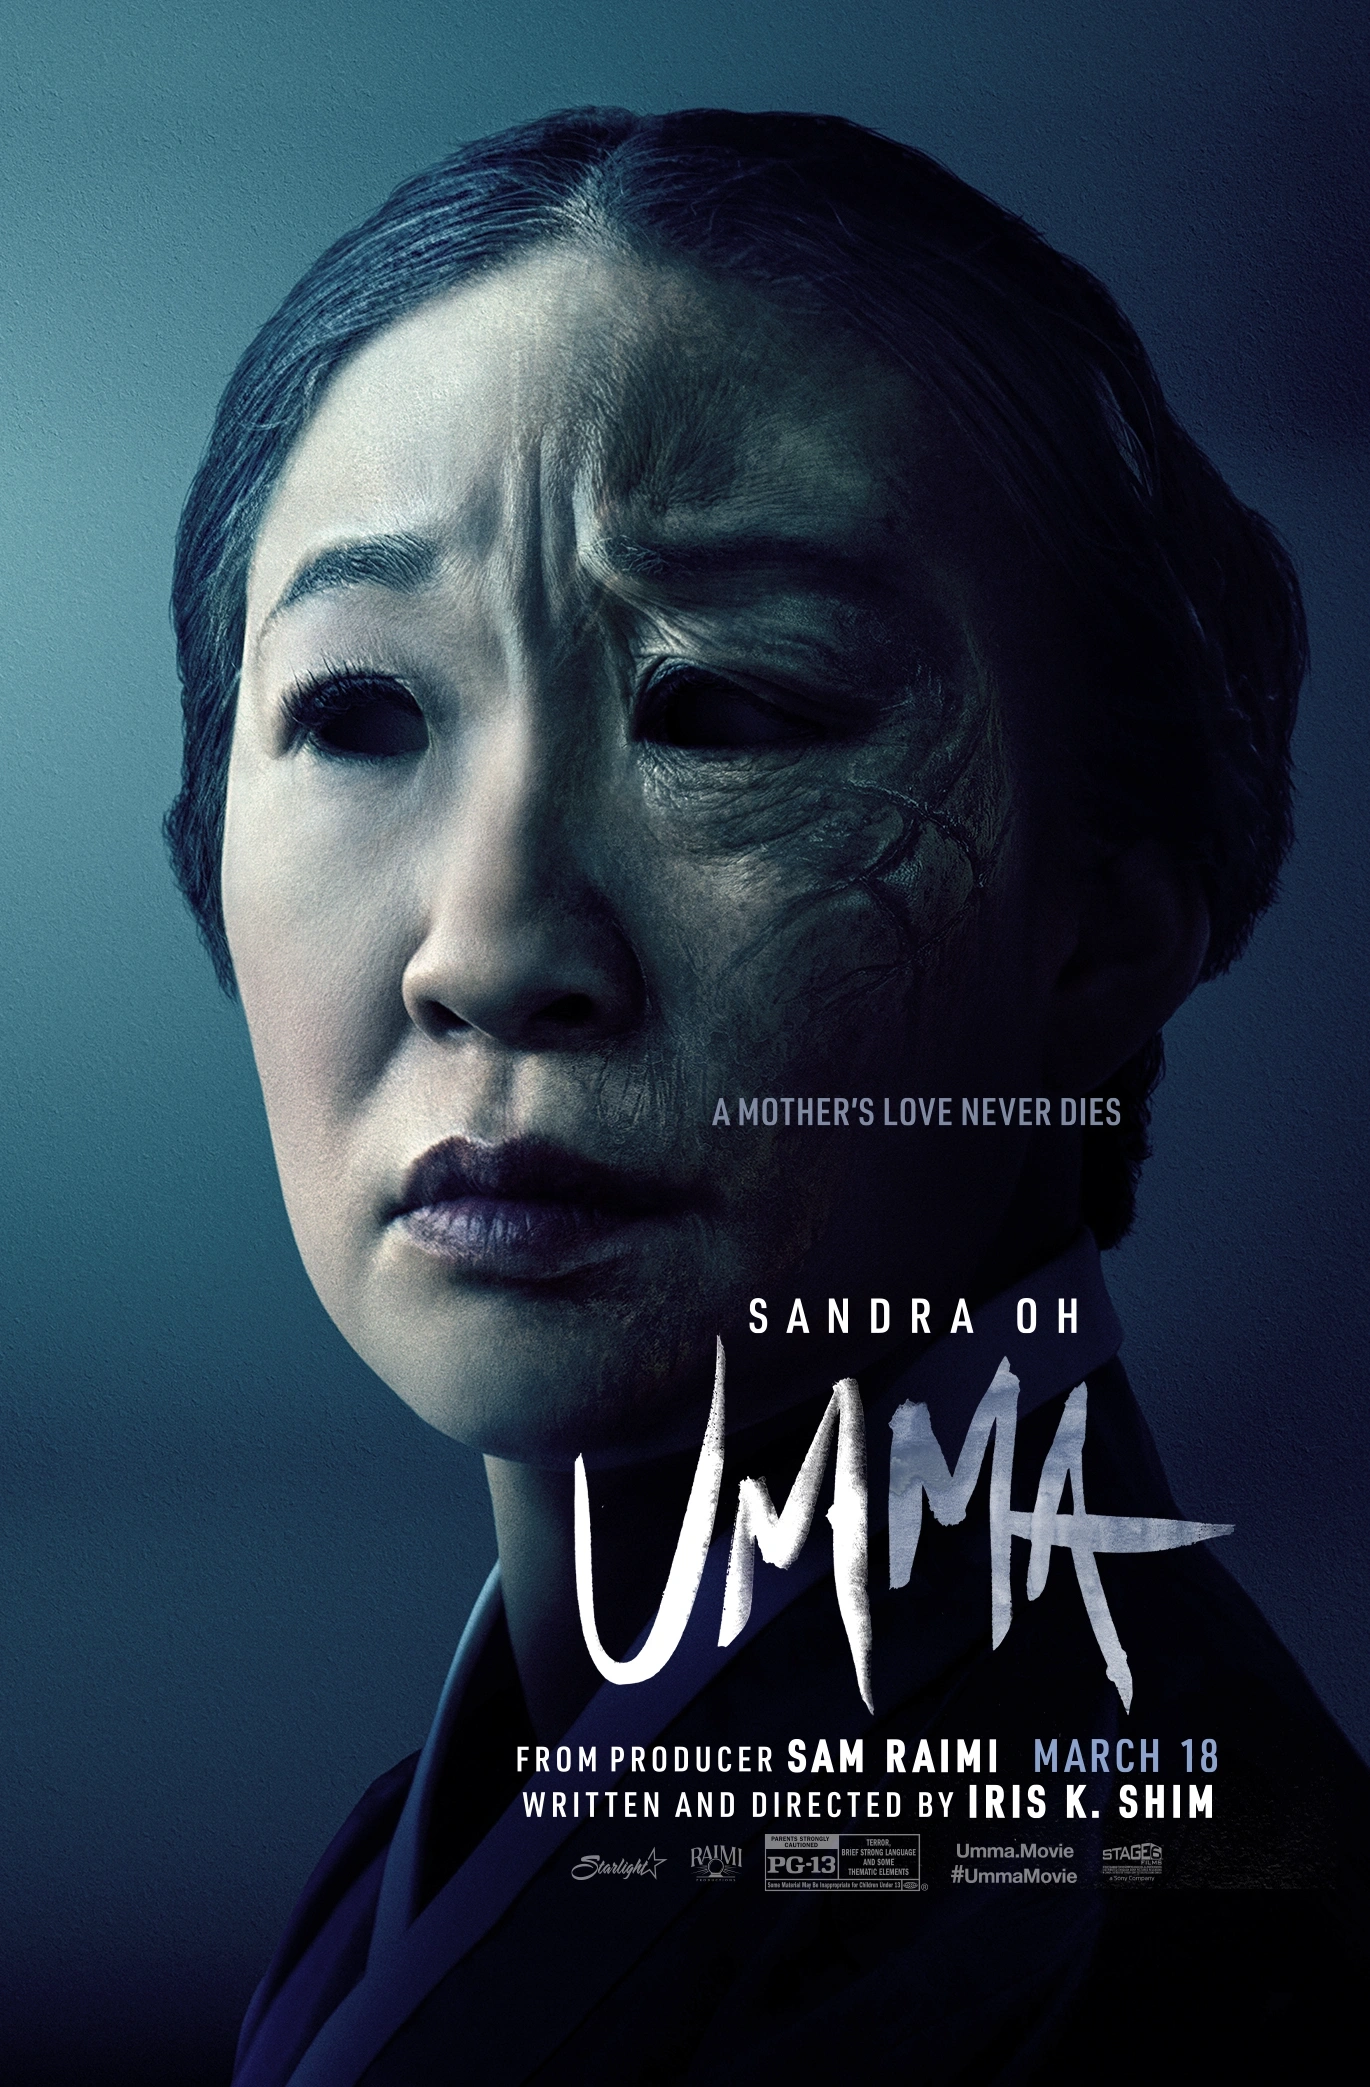 Poster for Sandra Oh's Horror Film "Umma"